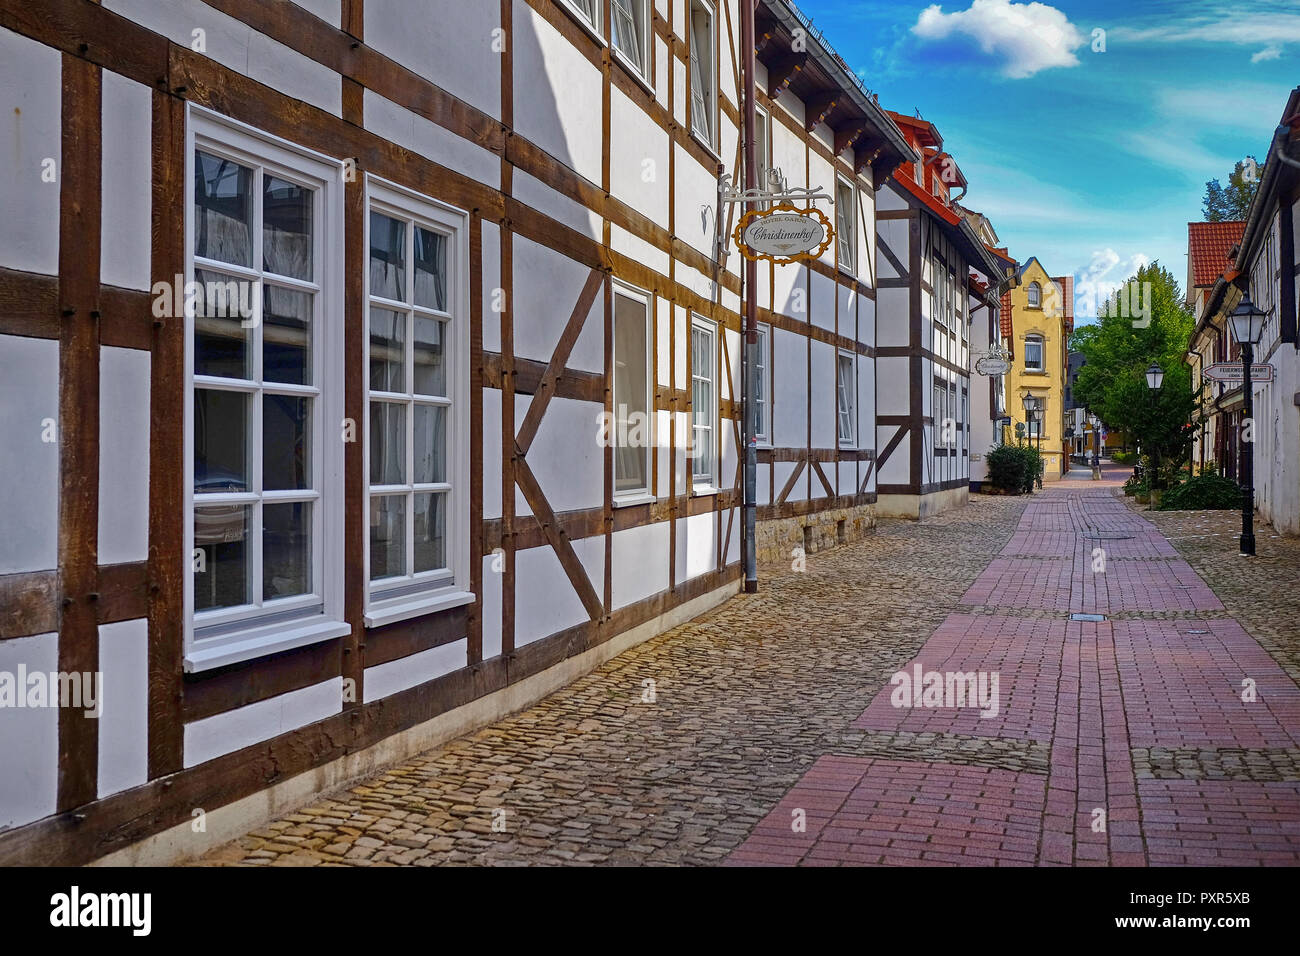 Centro histórico de la ciudad y casas tradicionales de Hameln/Hamelin, Alemania durante el tiempo soleado Foto de stock